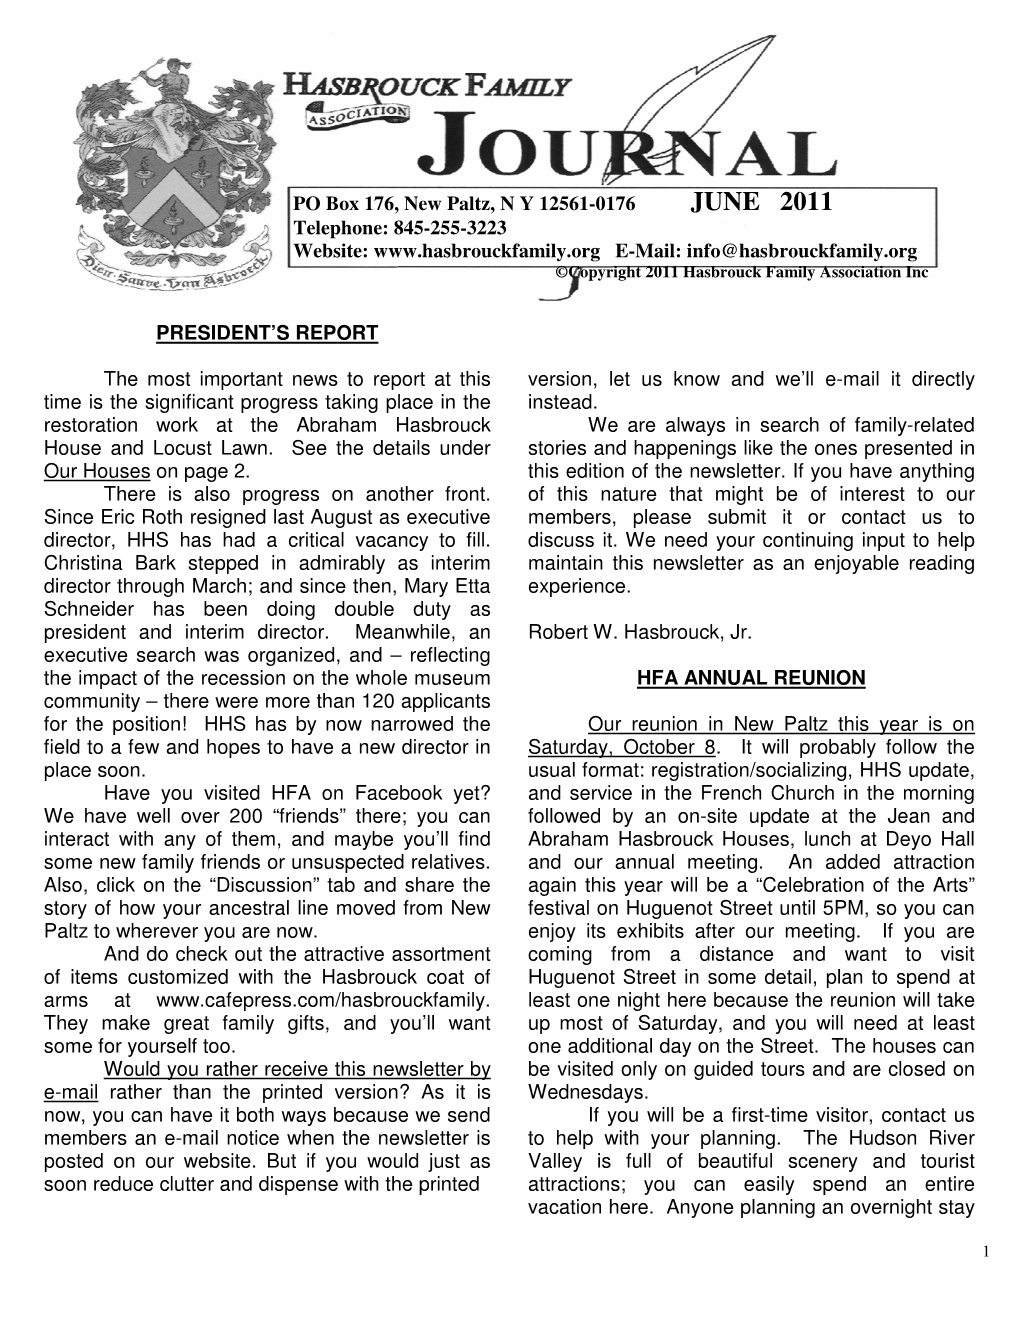 HFA-Journal-For-June